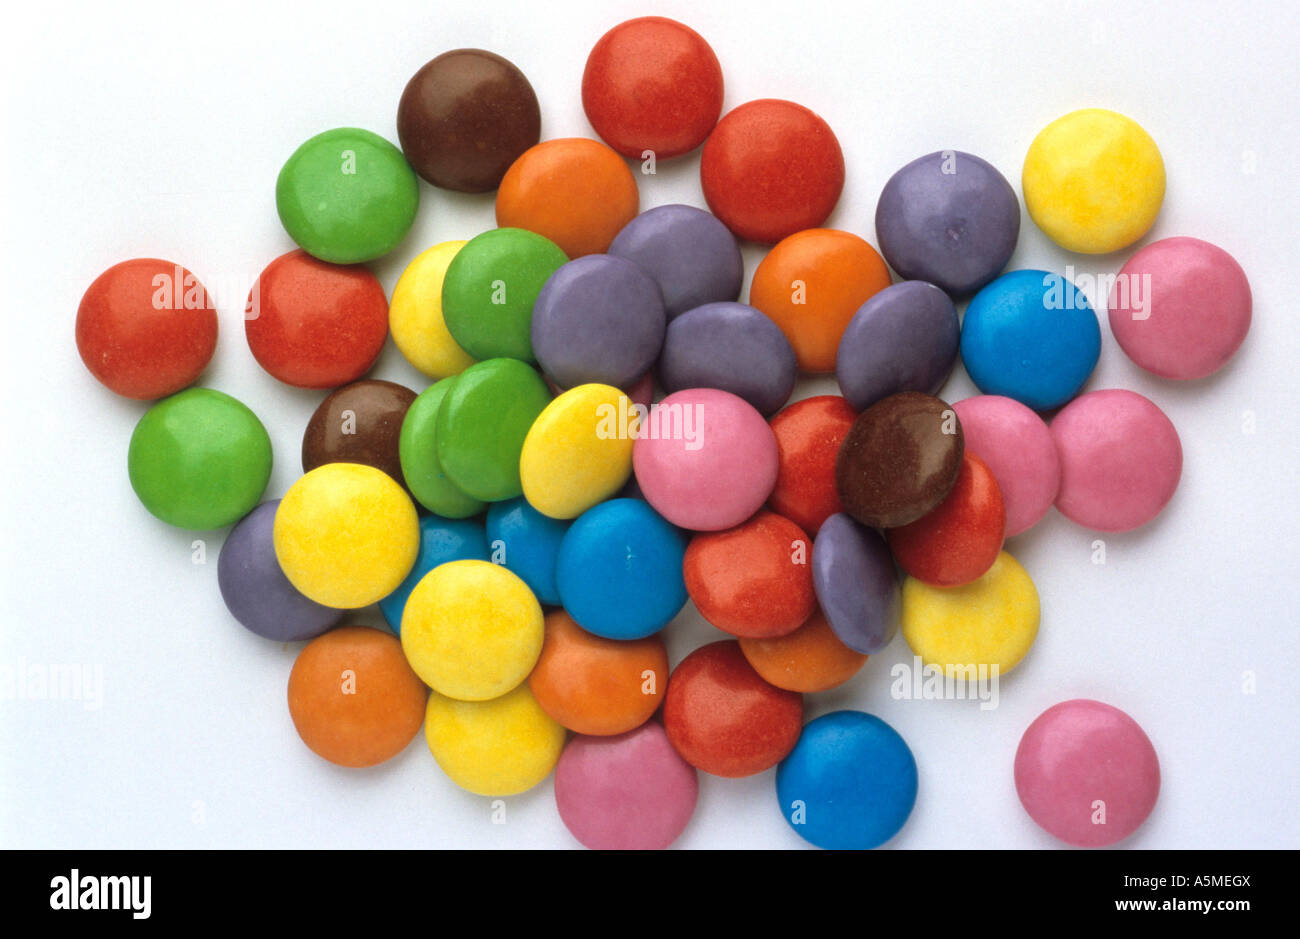 Bunte Schokolinsen Zuckerguß Zuckerguss Süßigkeiten Nascherei Lebensmittel sweets candy alimentari chocobons with coloured sugar Stock Photo